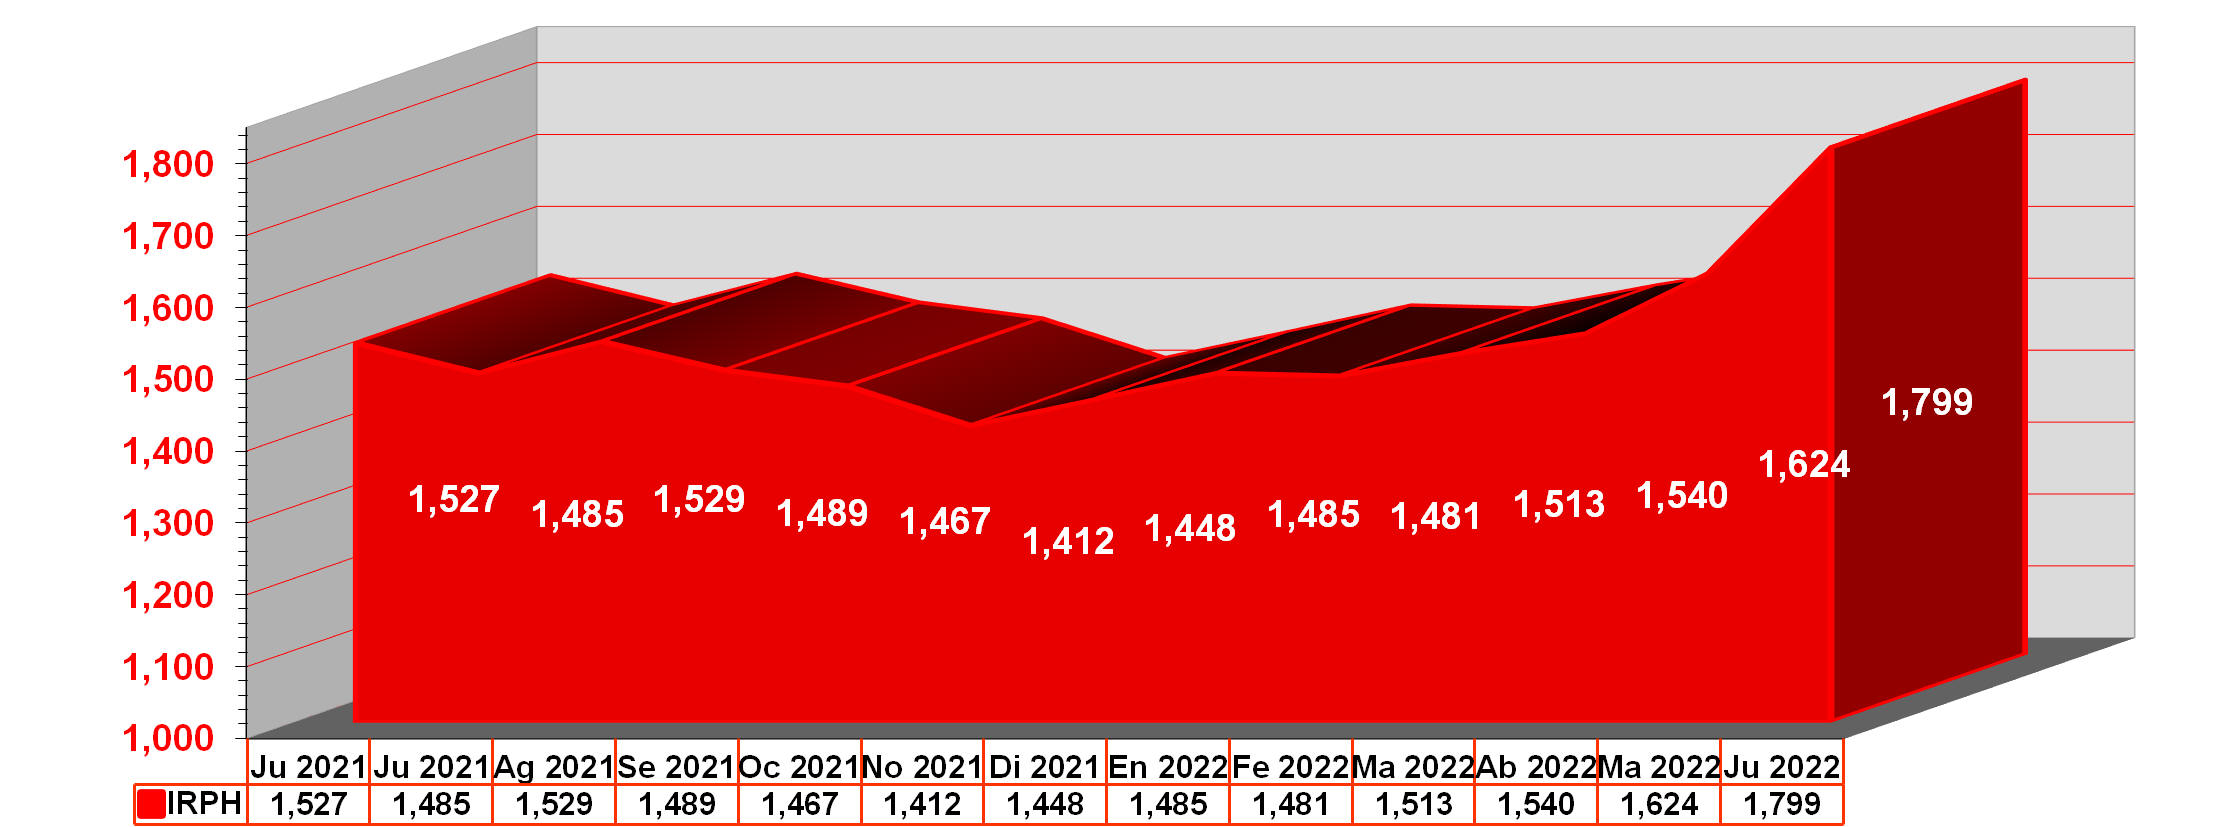 Gráfico anual IRPH desde junio de 2021 hasta junio de 2022